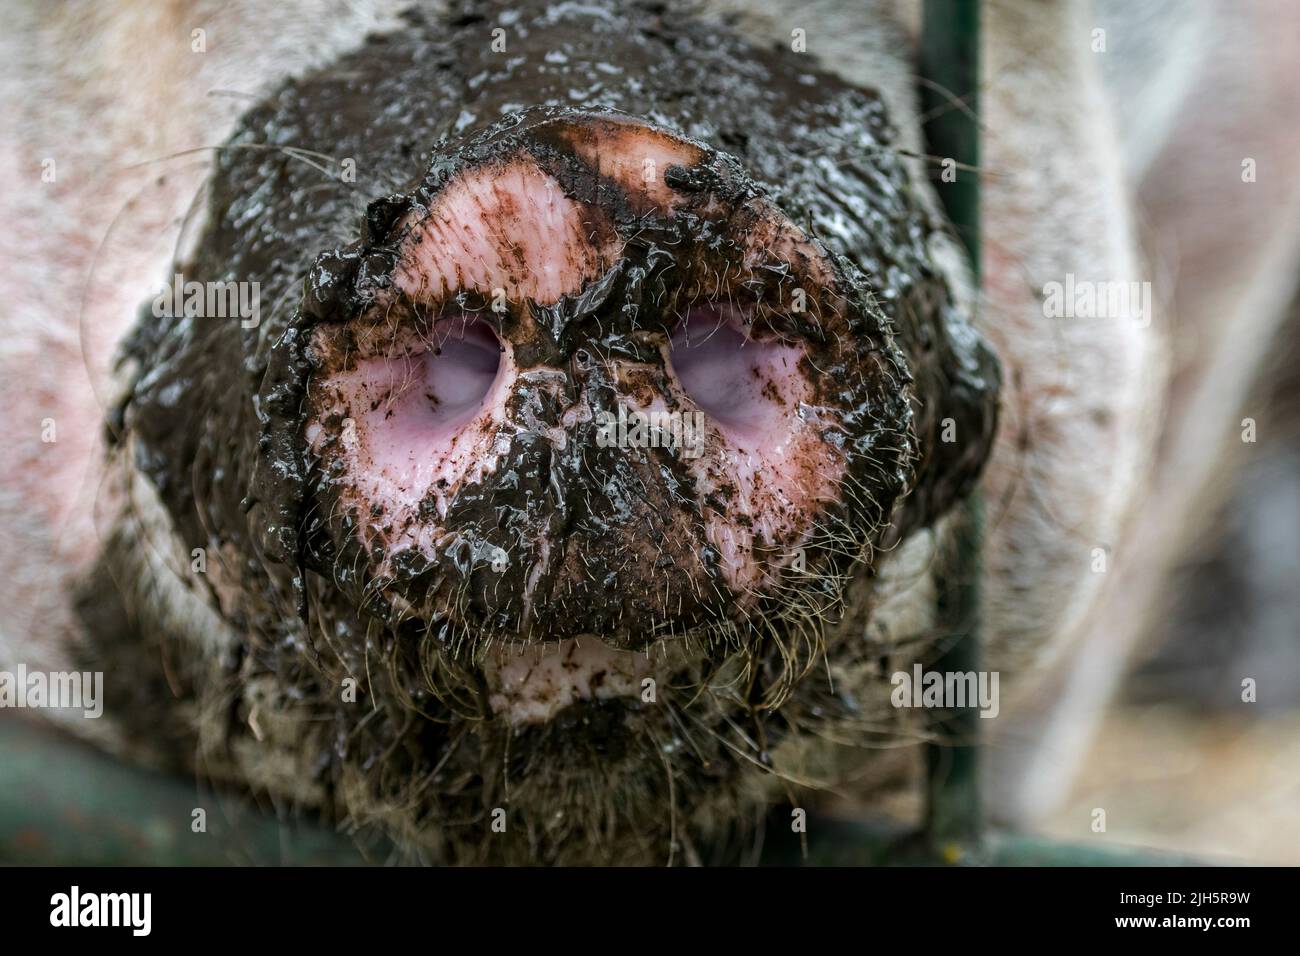 Primo piano di lungo muddy muso / naso di maiale domestico / suino (Sus domestica) che si attacca attraverso la recinzione di metallo in fattoria Foto Stock